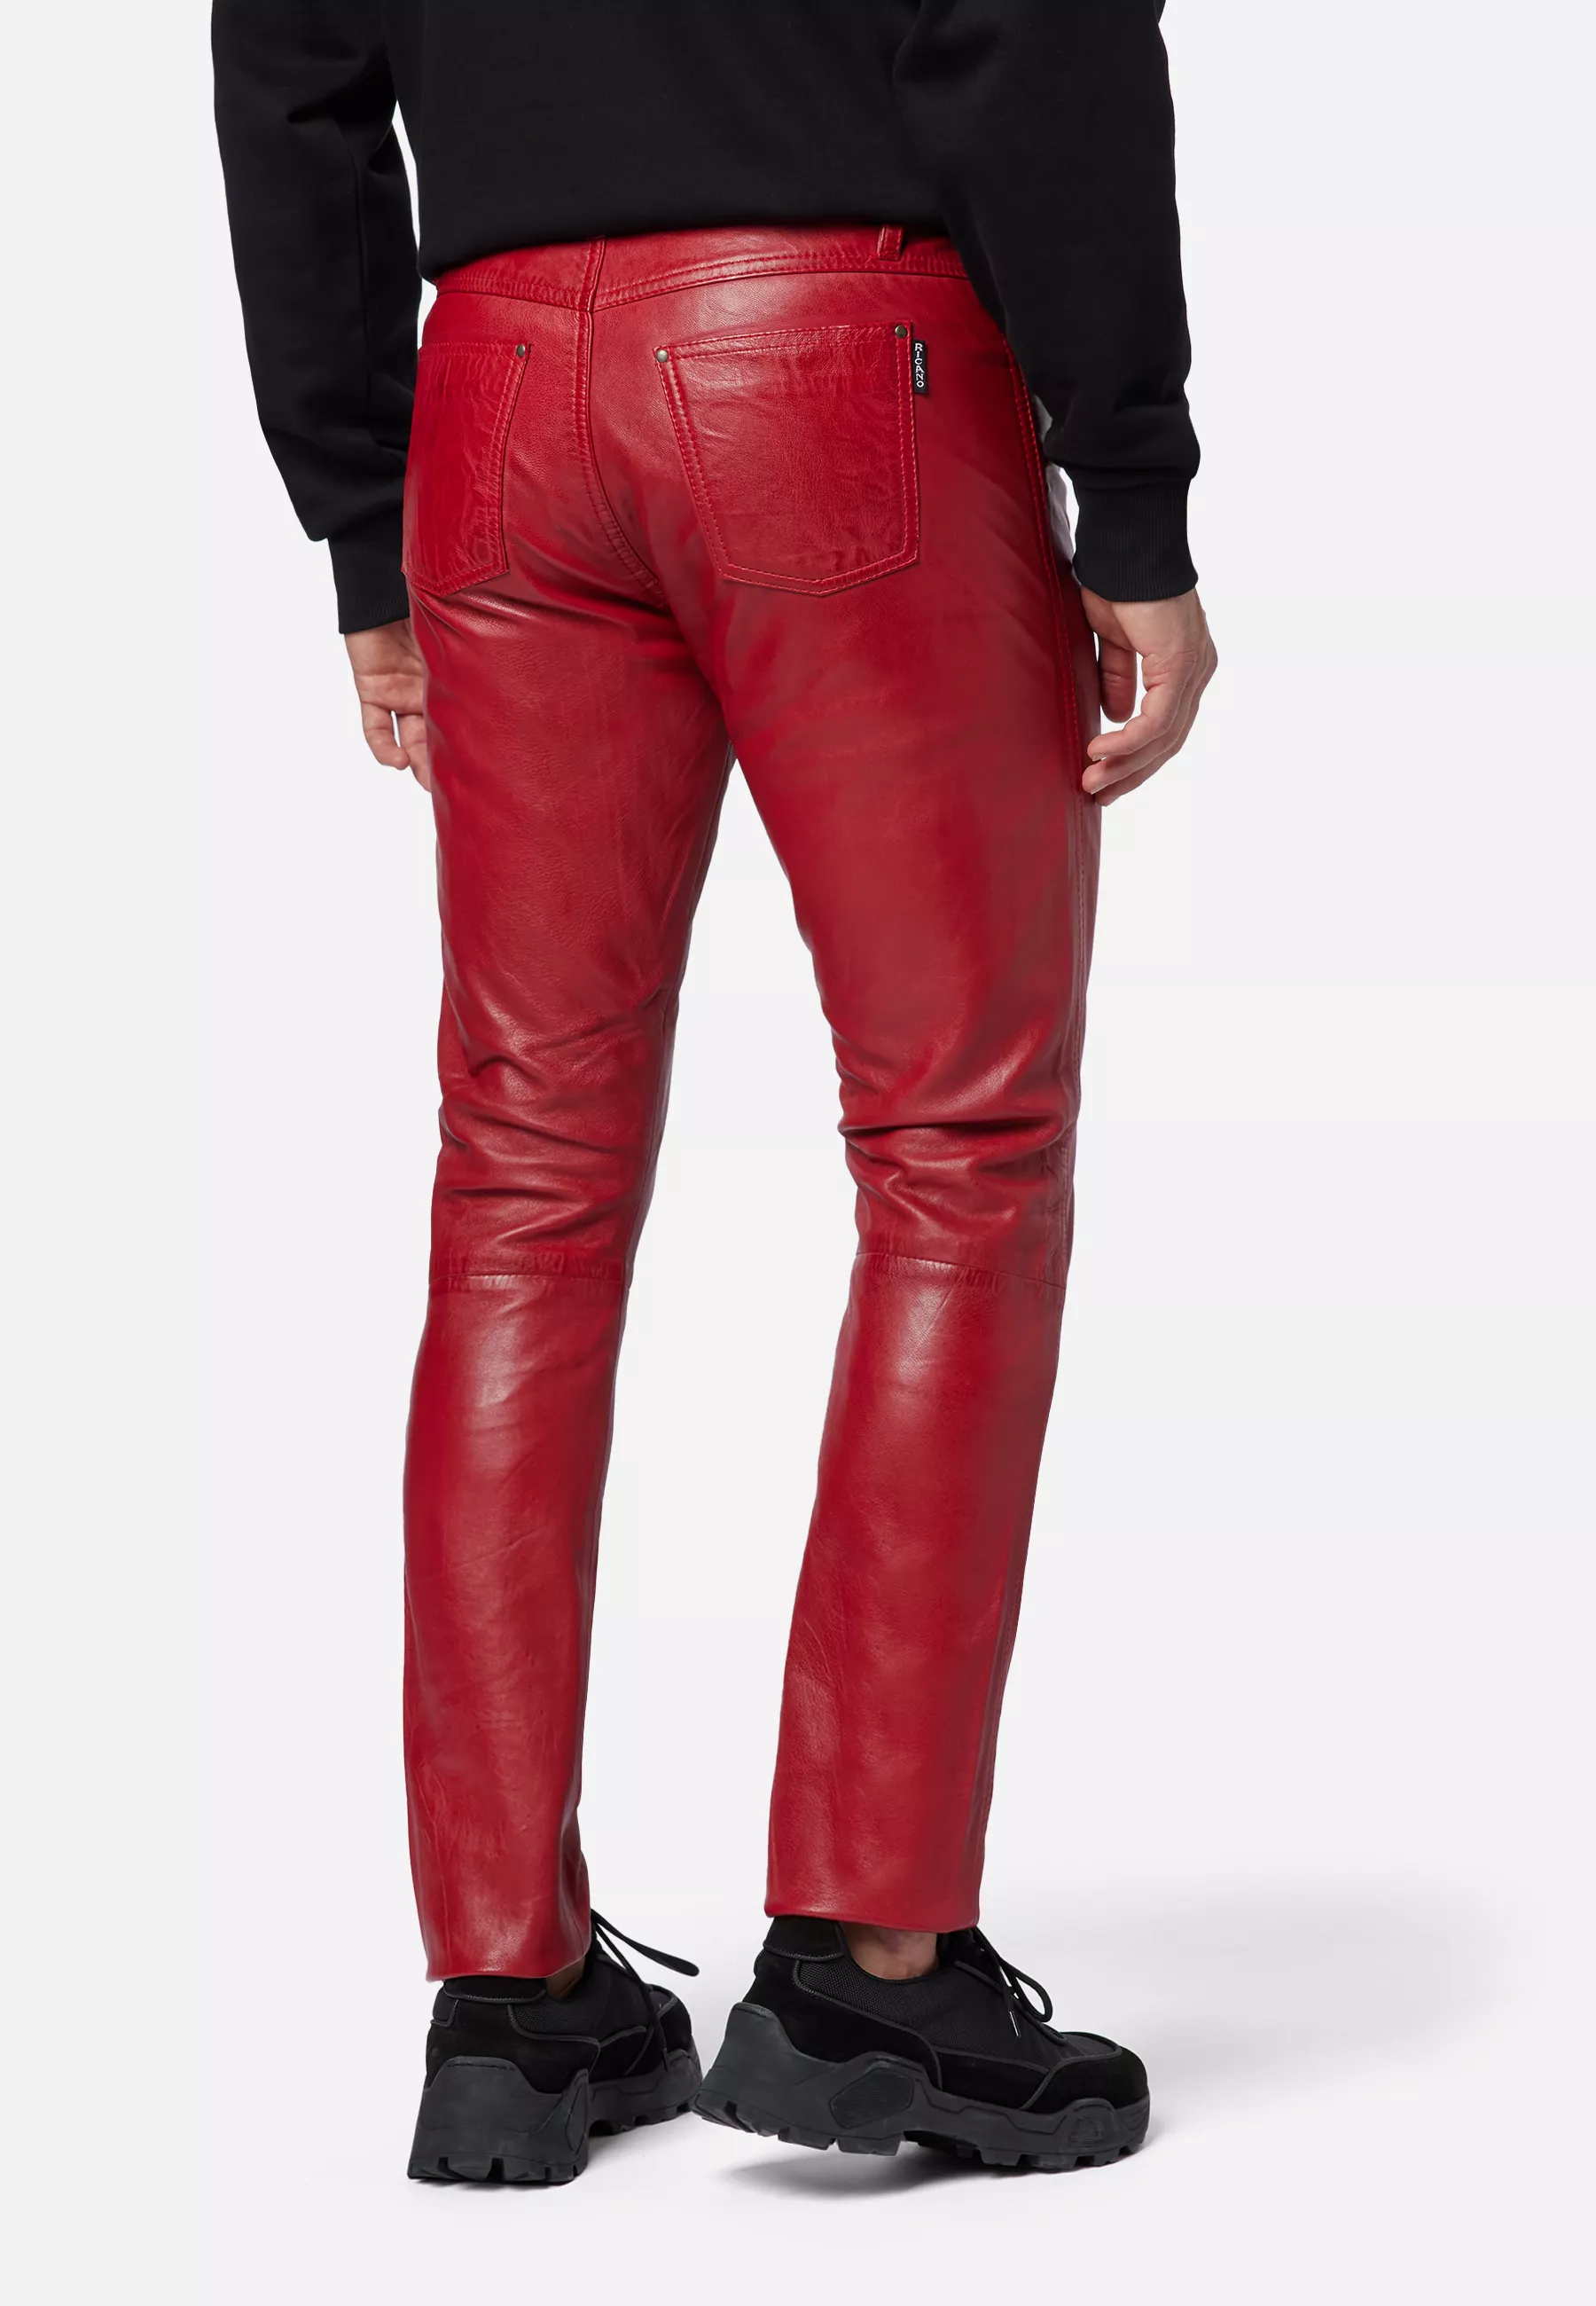 Herren Lederhose Slim Fit in Rot von Ricano, Rückansicht am Model